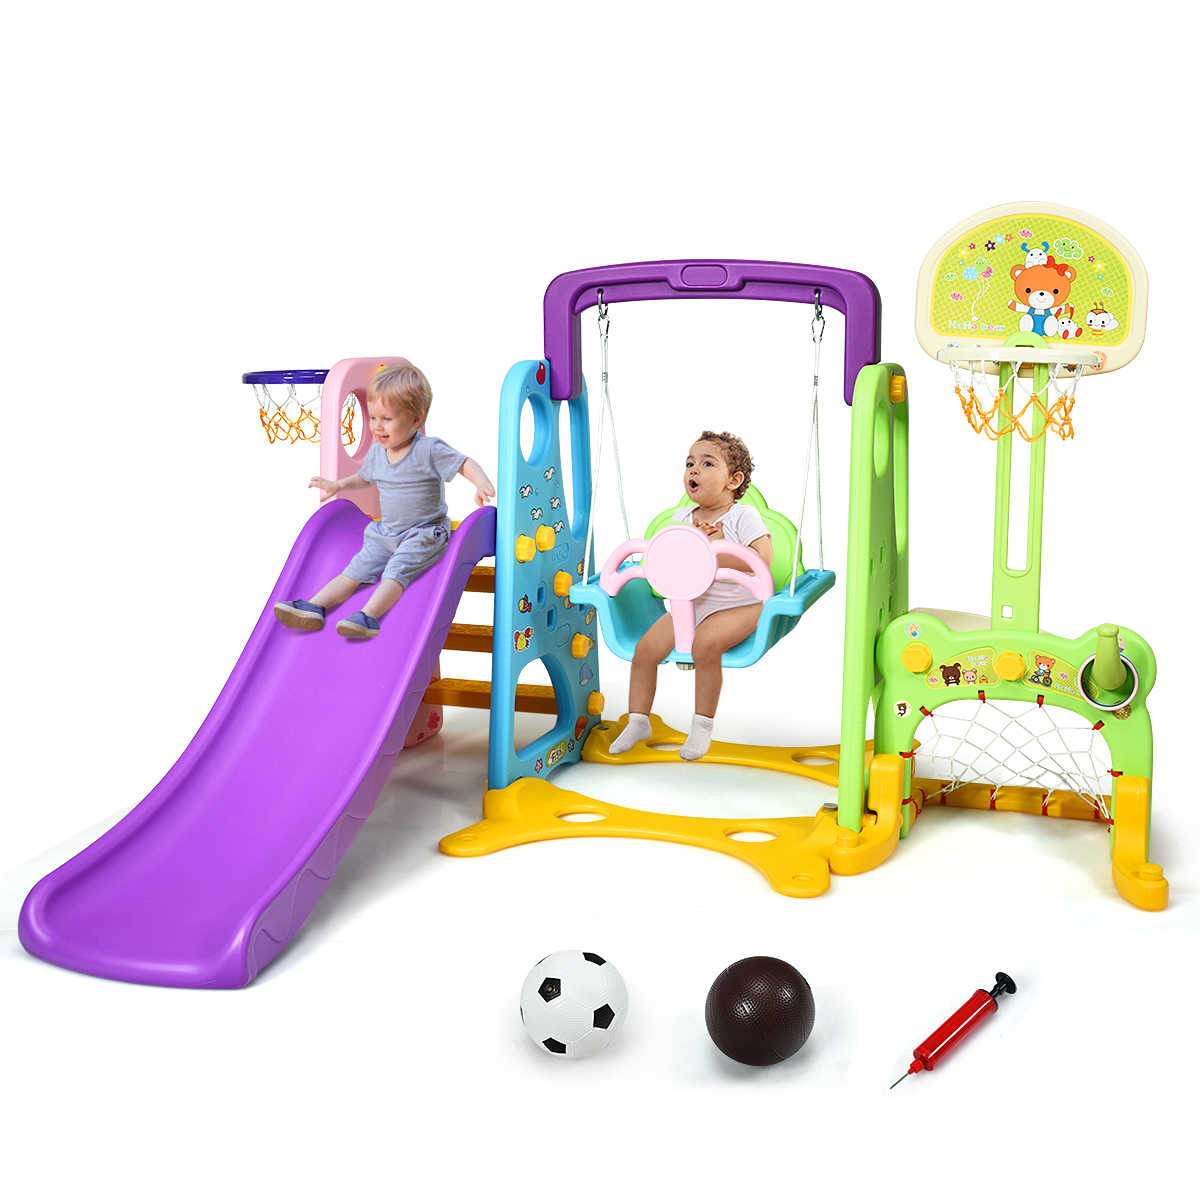 Kids Swing Set Playground Slide Children Play Area Outdoor Garden Toddler Baby